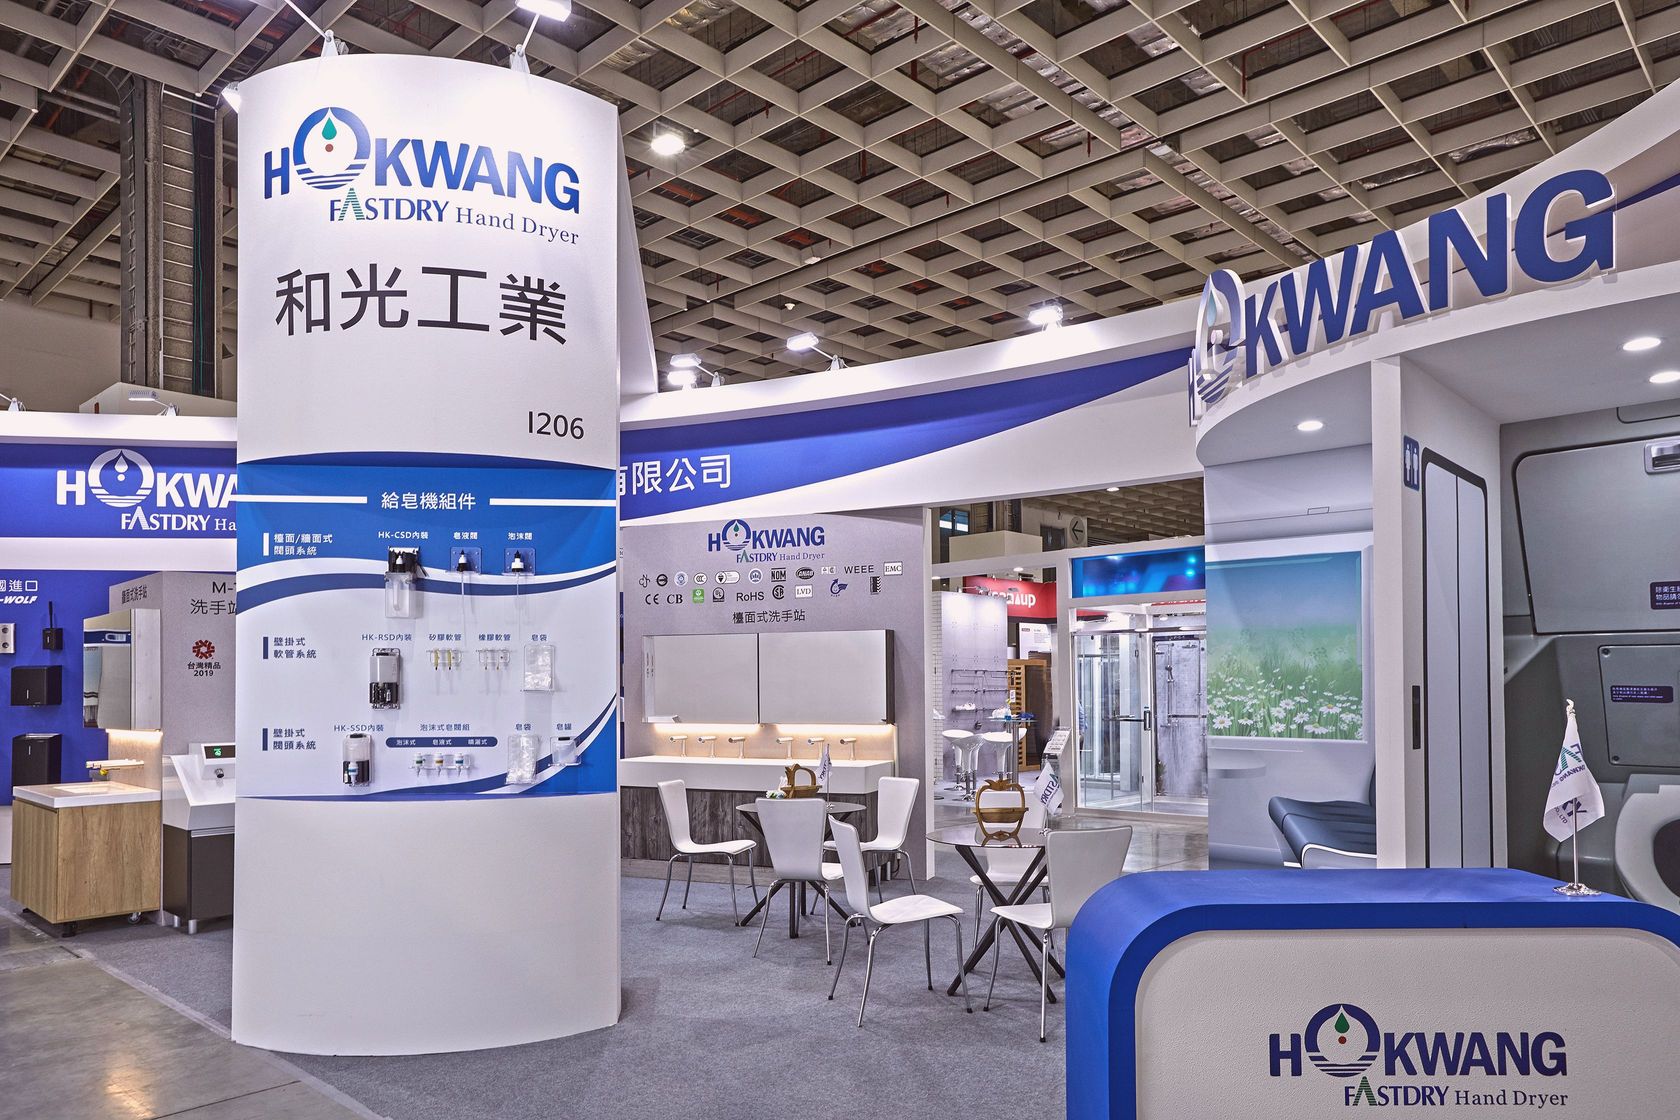 Hokwang thiết kế gian hàng tại Triển lãm Taipei Building Show 2019